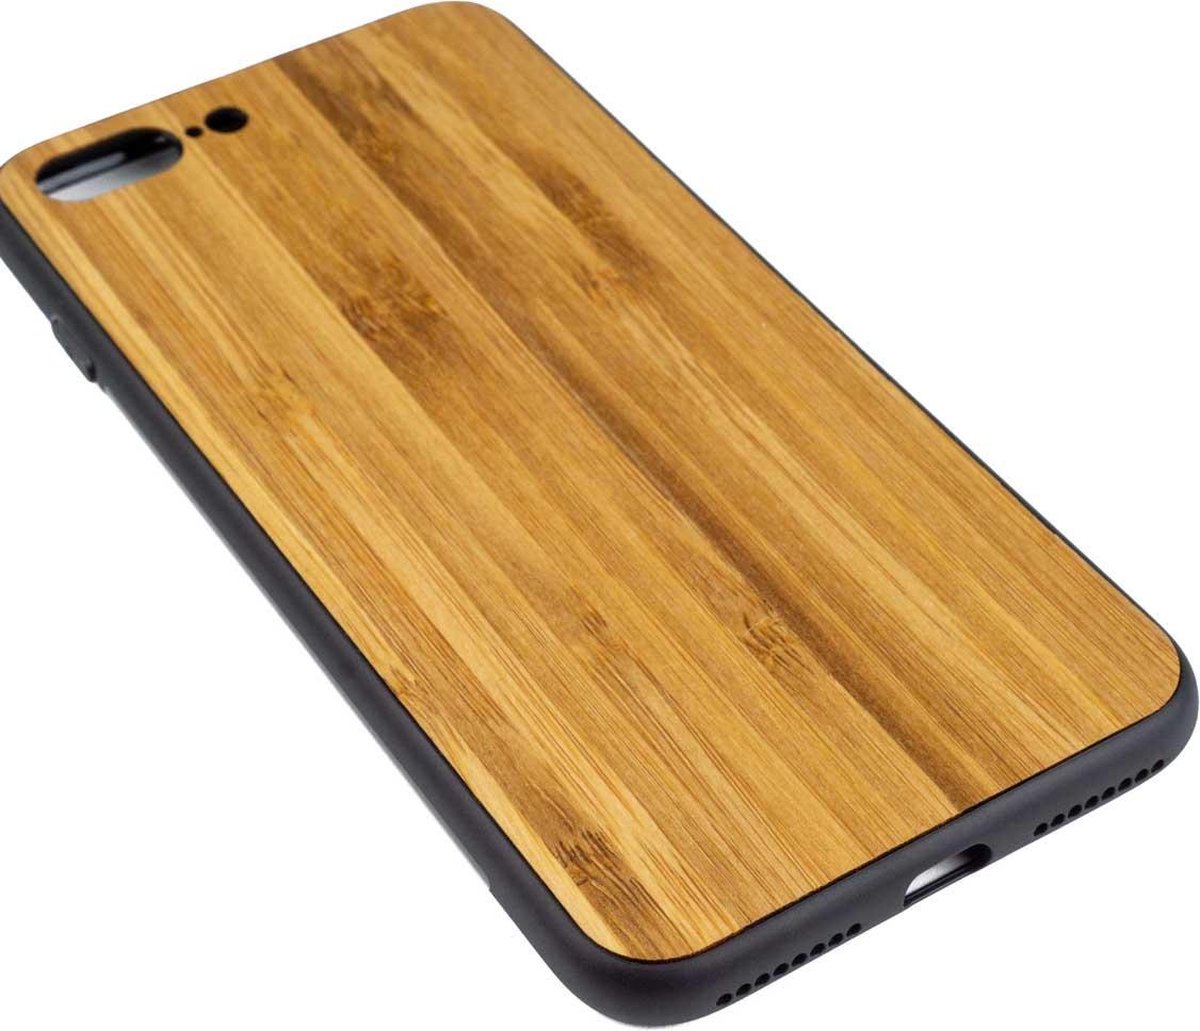 Houten Telefoonhoesje Iphone 8 PLUS - Bumper case - Bamboe